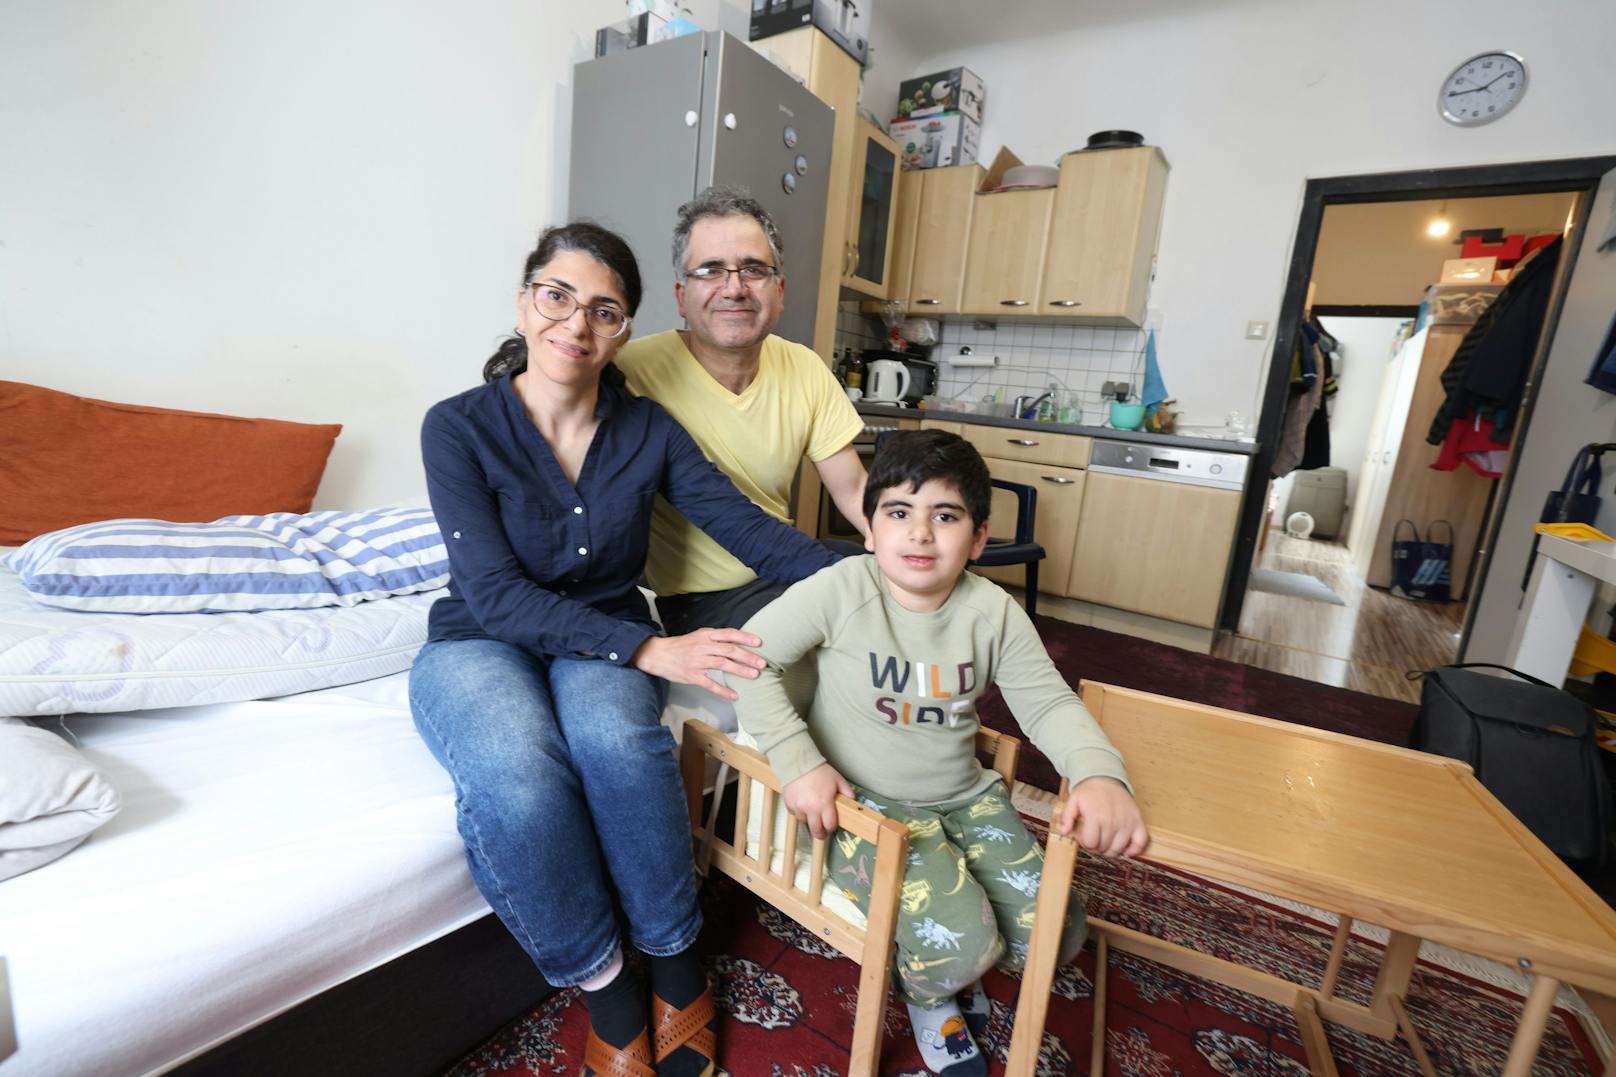 Familie mit krankem Sohn will raus aus Schimmel-Wohnung